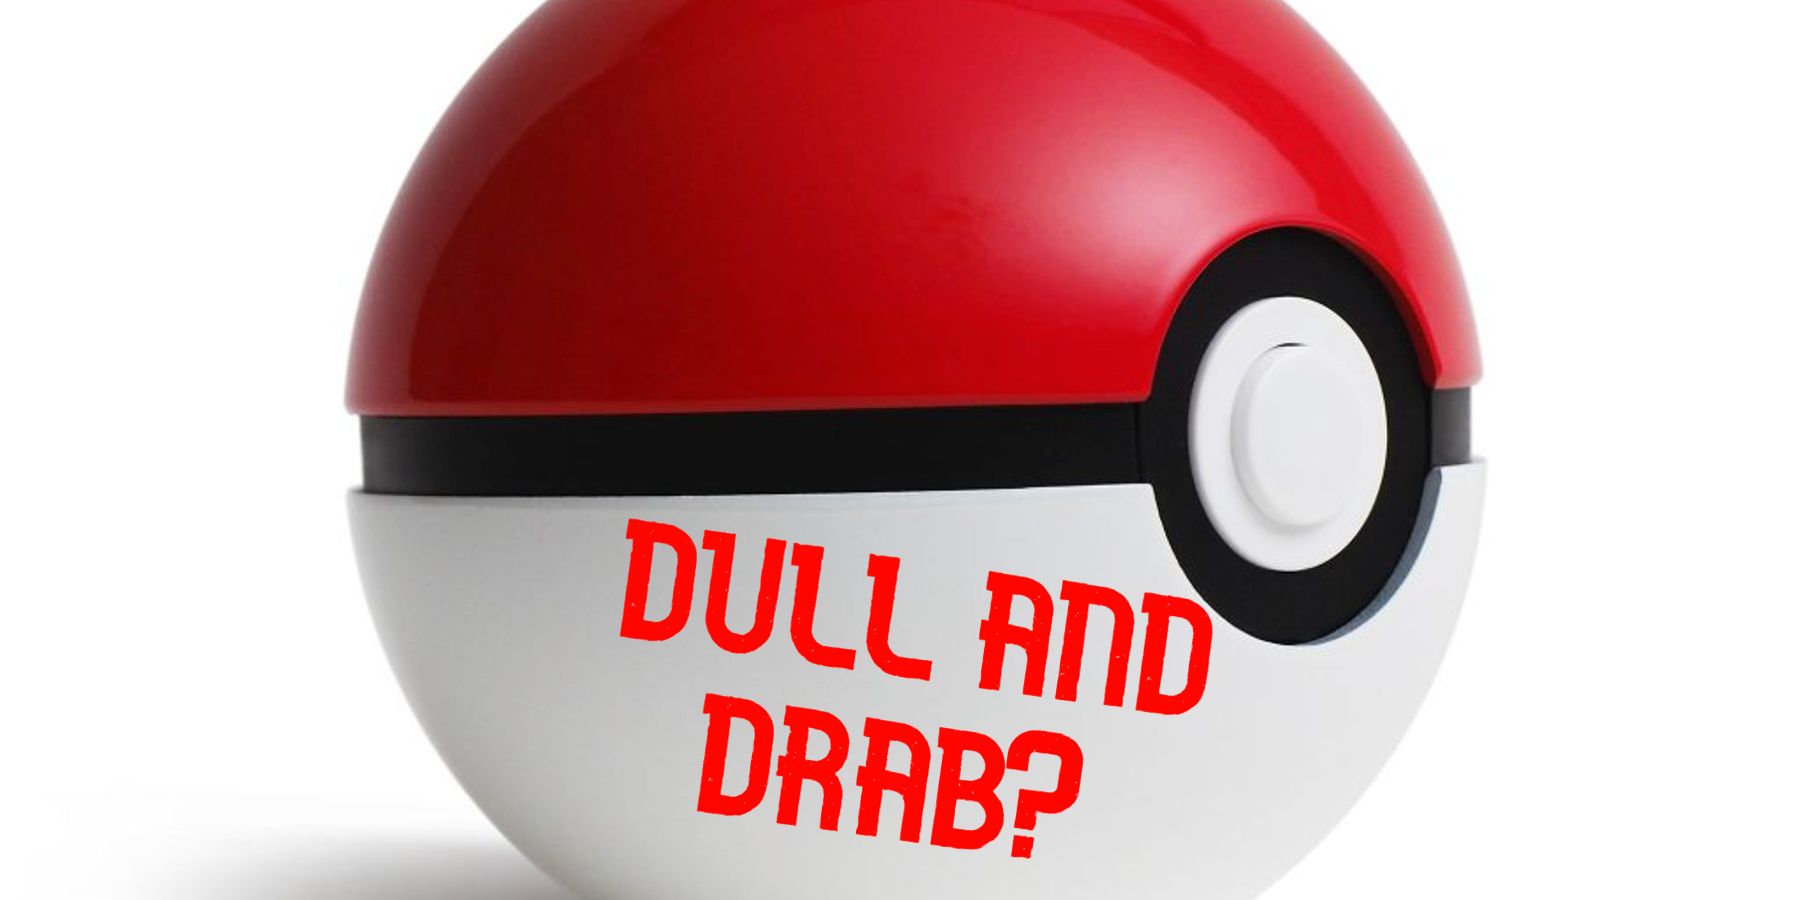 Pokemon Fan Has An Interesting New Poke Ball Idea